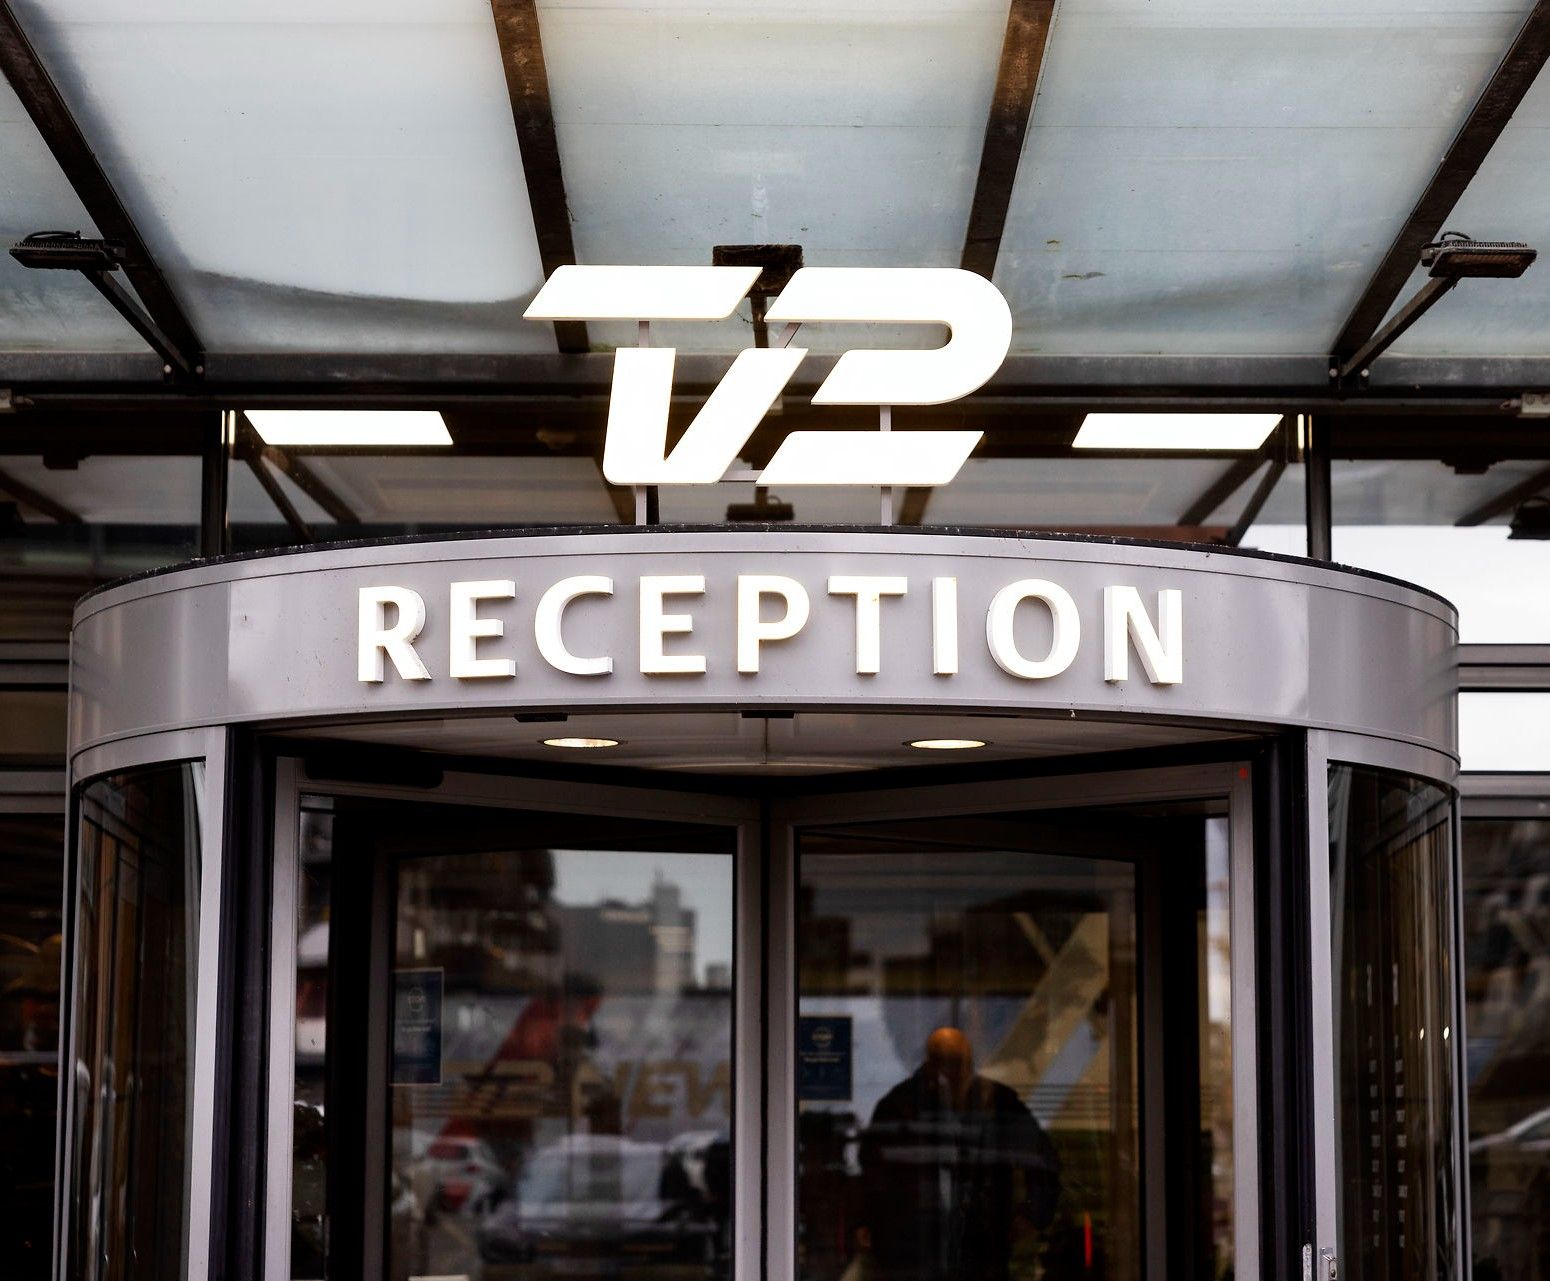 TV 2 er blevet afsløret i at modtage betaling for tv-indslag endnu en gang. Foto: Thomas Borberg